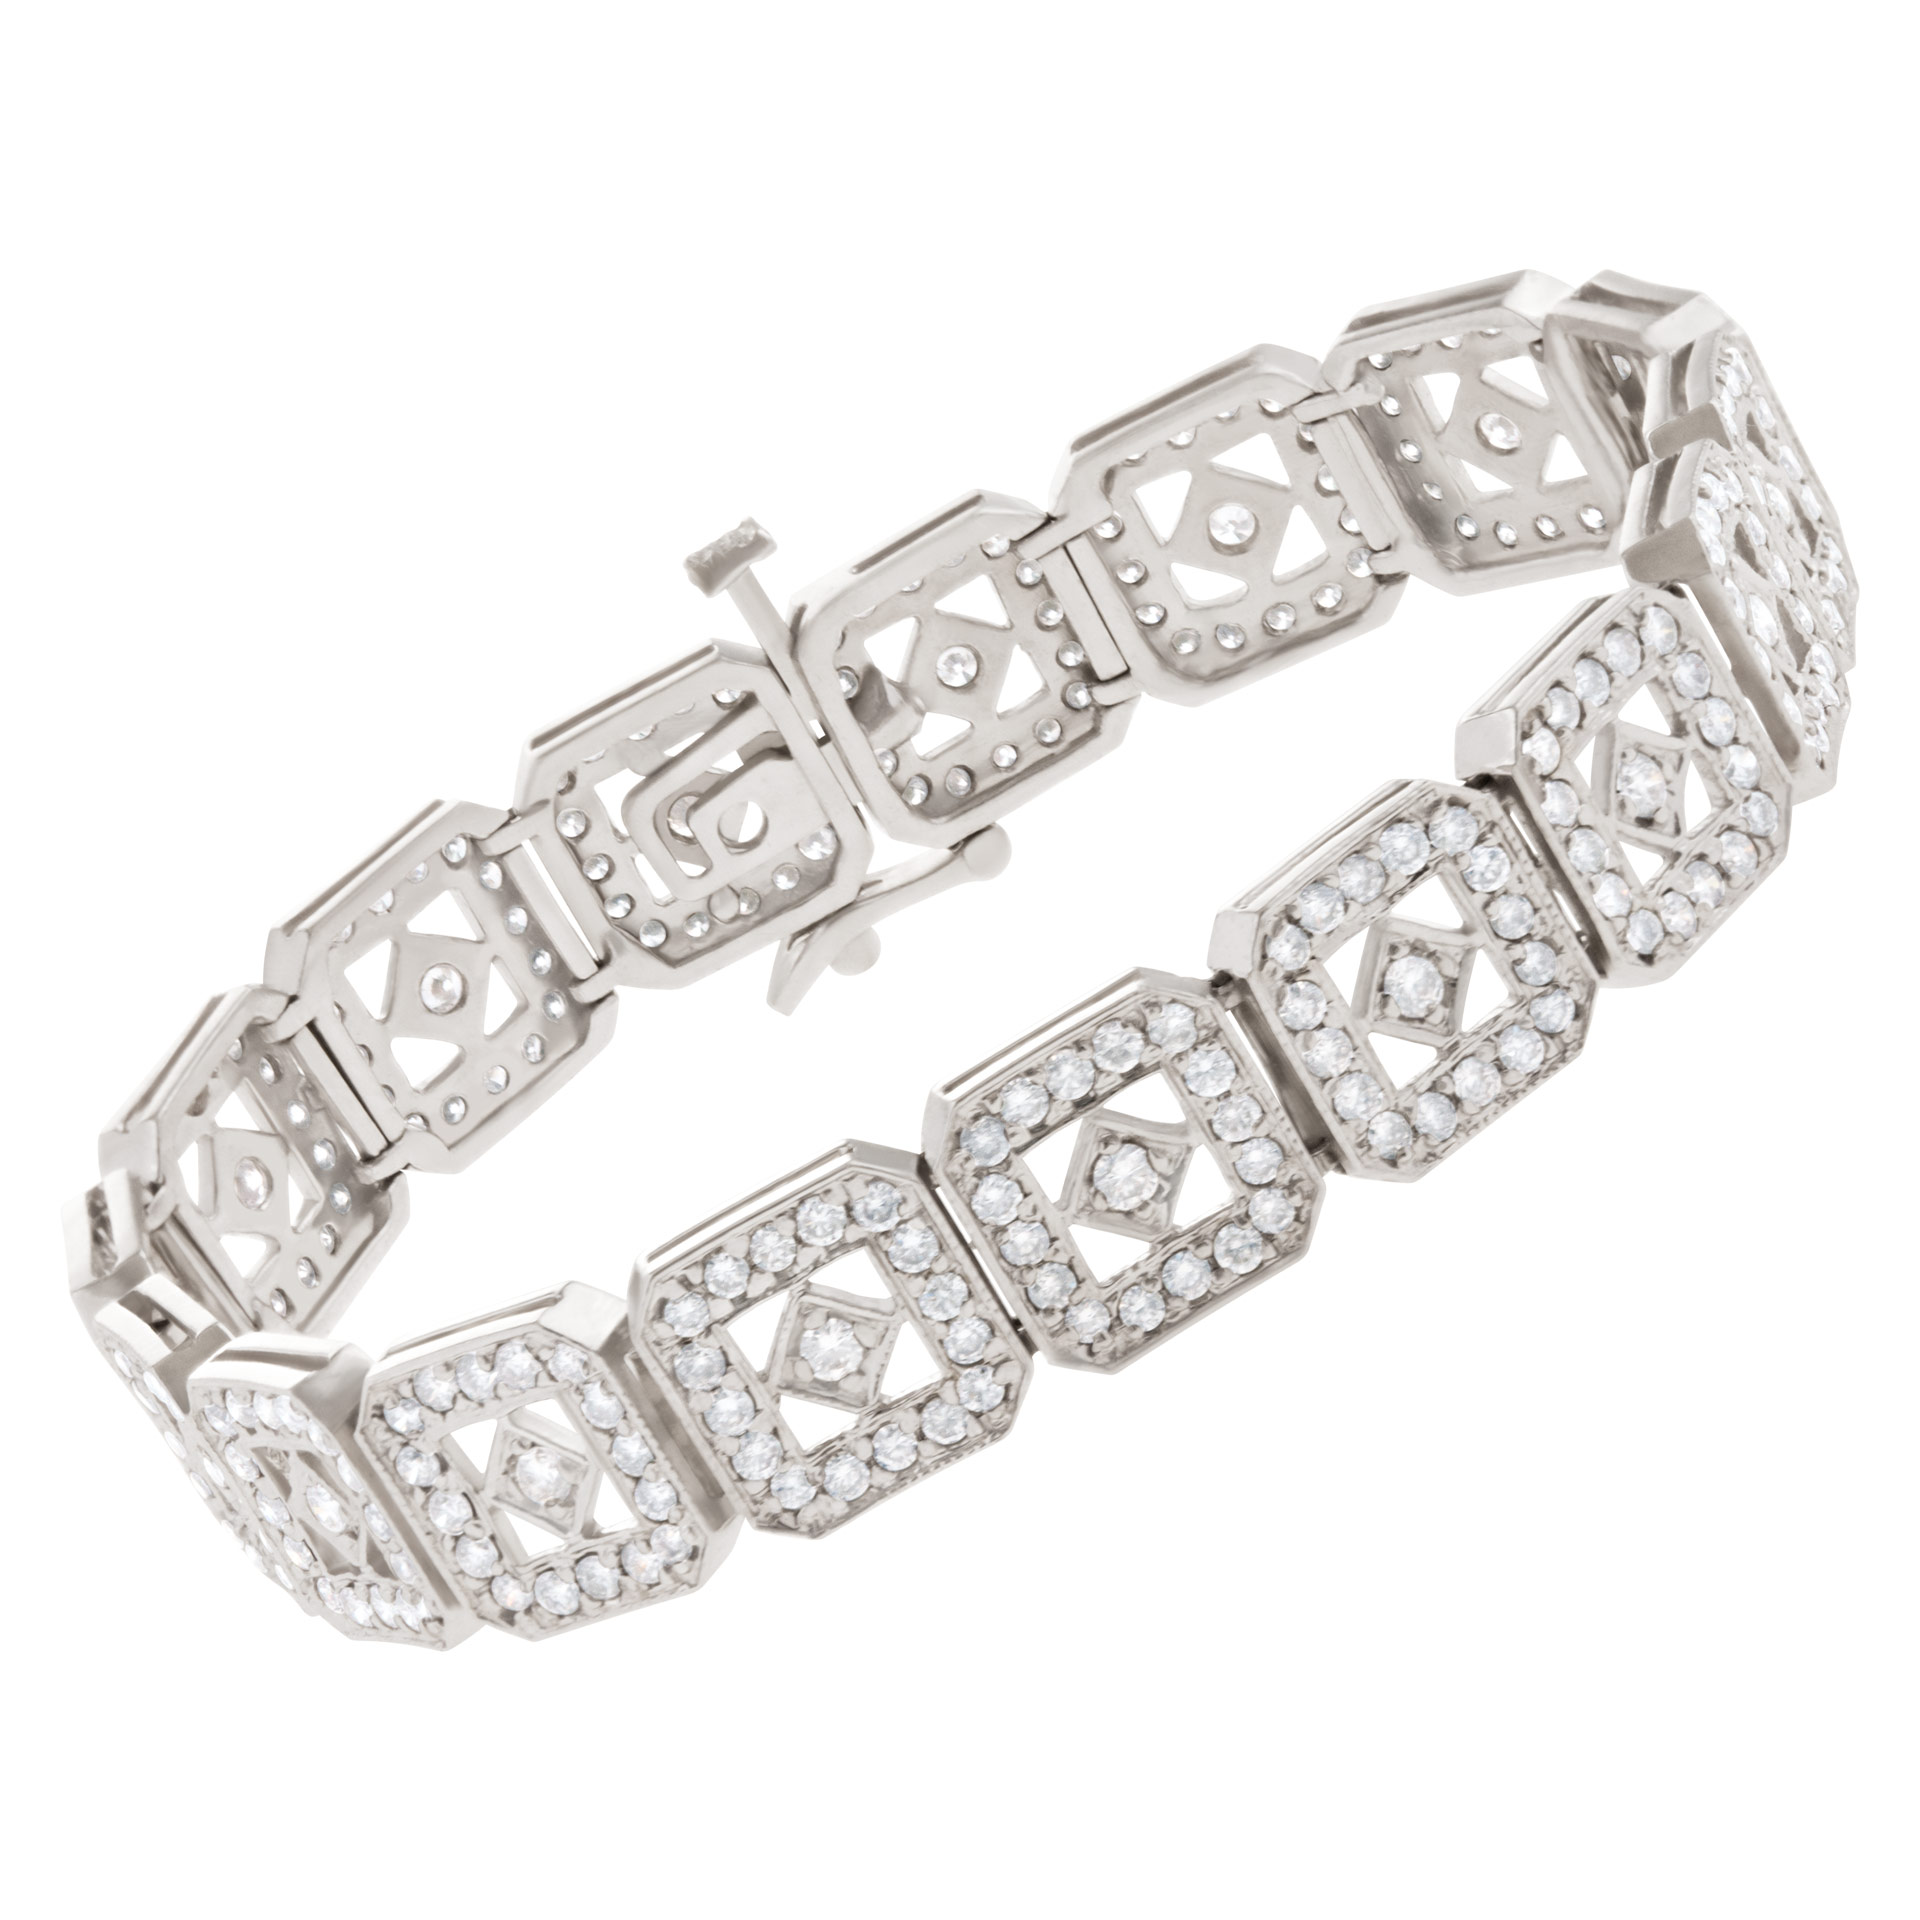 Diamond bracelet in 14k white gold